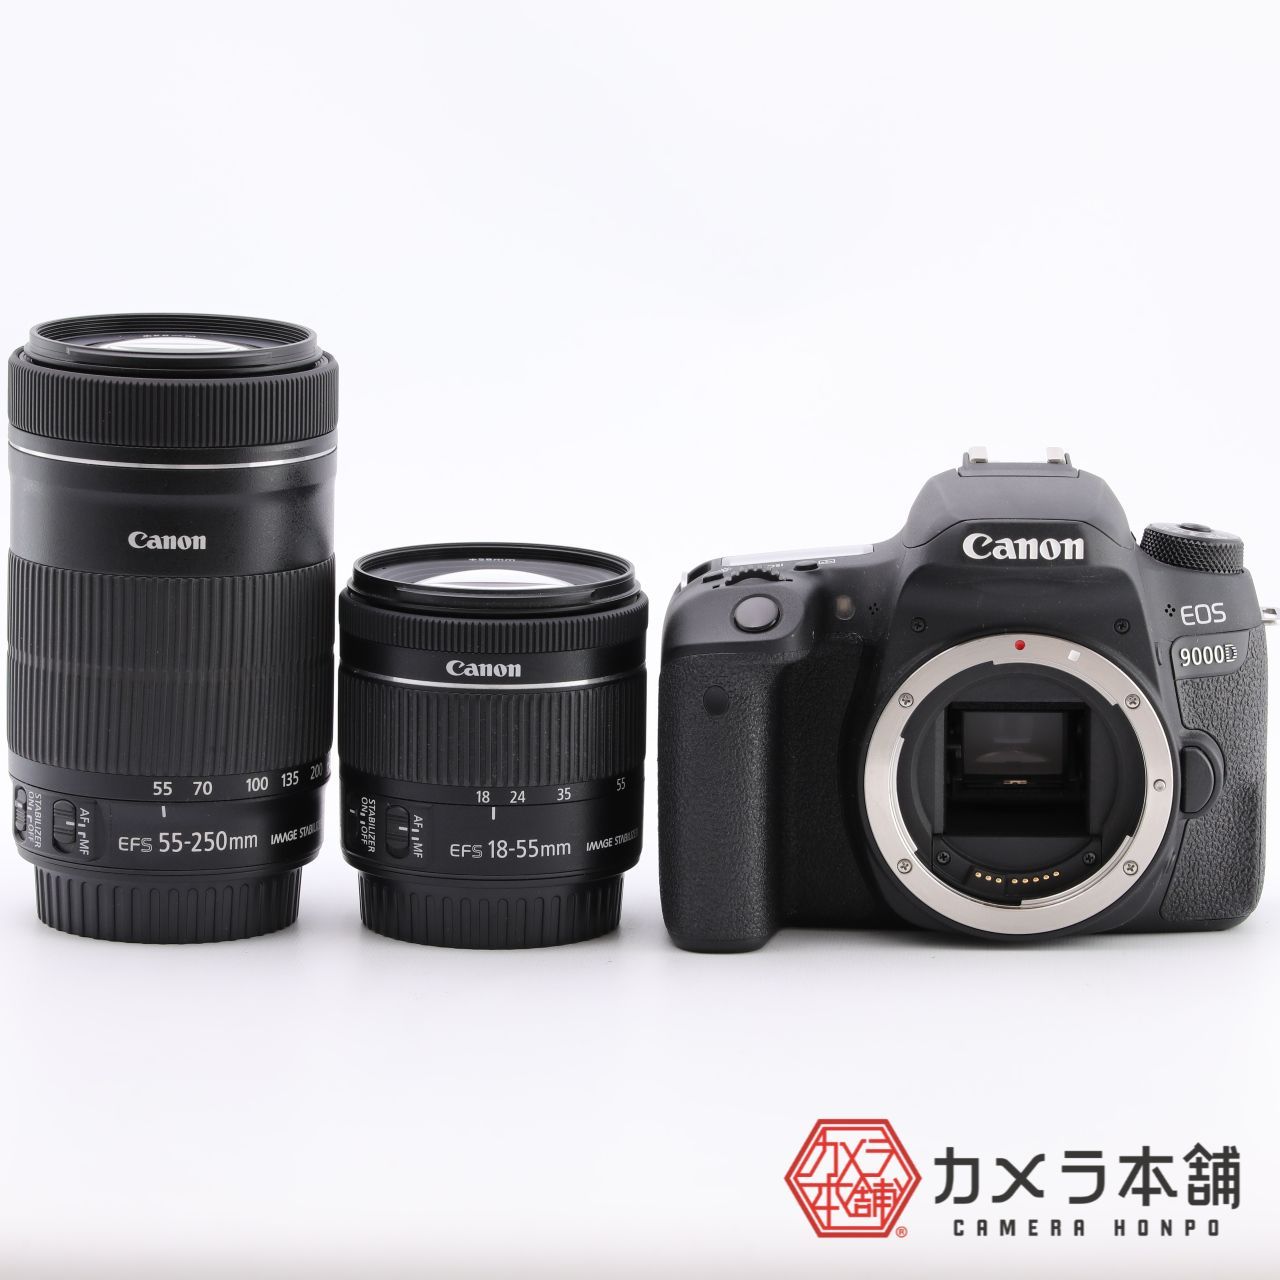 Canon デジタル一眼レフカメラ EOS 9000D ダブルズームキット カメラ本舗｜Camera honpo メルカリ